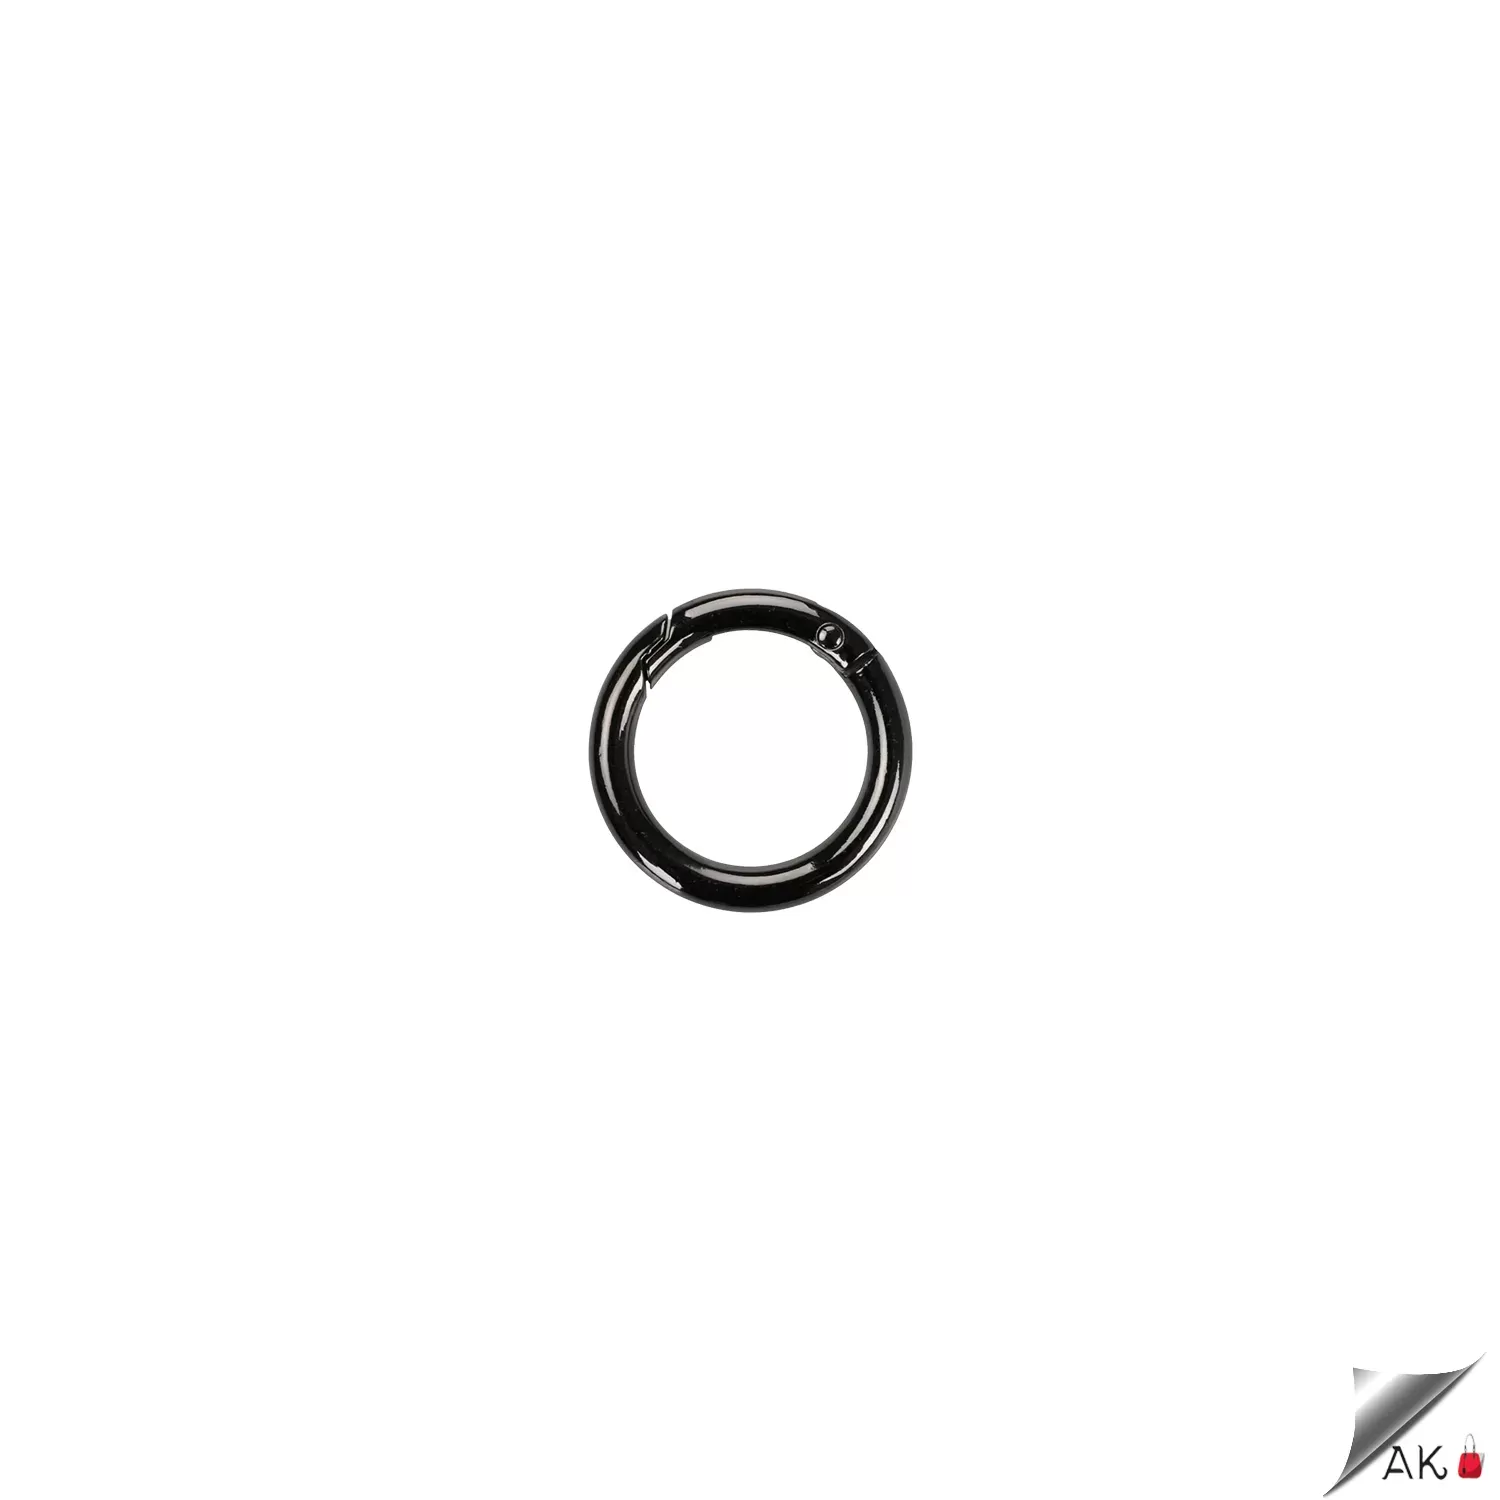 Aklar Malzeme 2.5 cm Metal Yaylı Halka Füme (Siyah) - 100 Adet